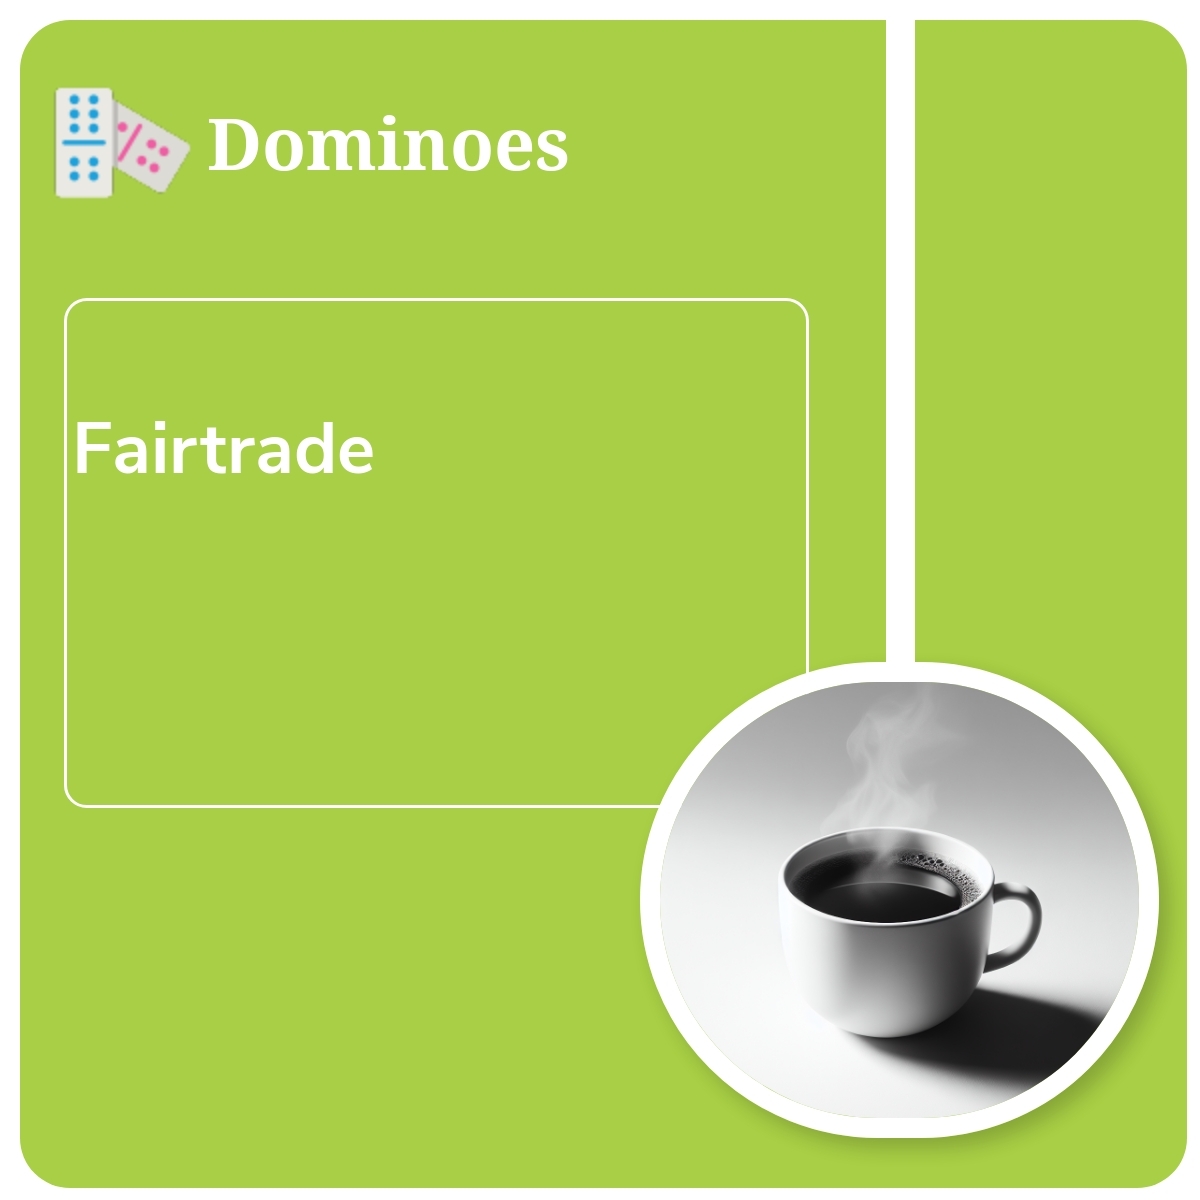 Dominoes - Set 1: Fairtrade